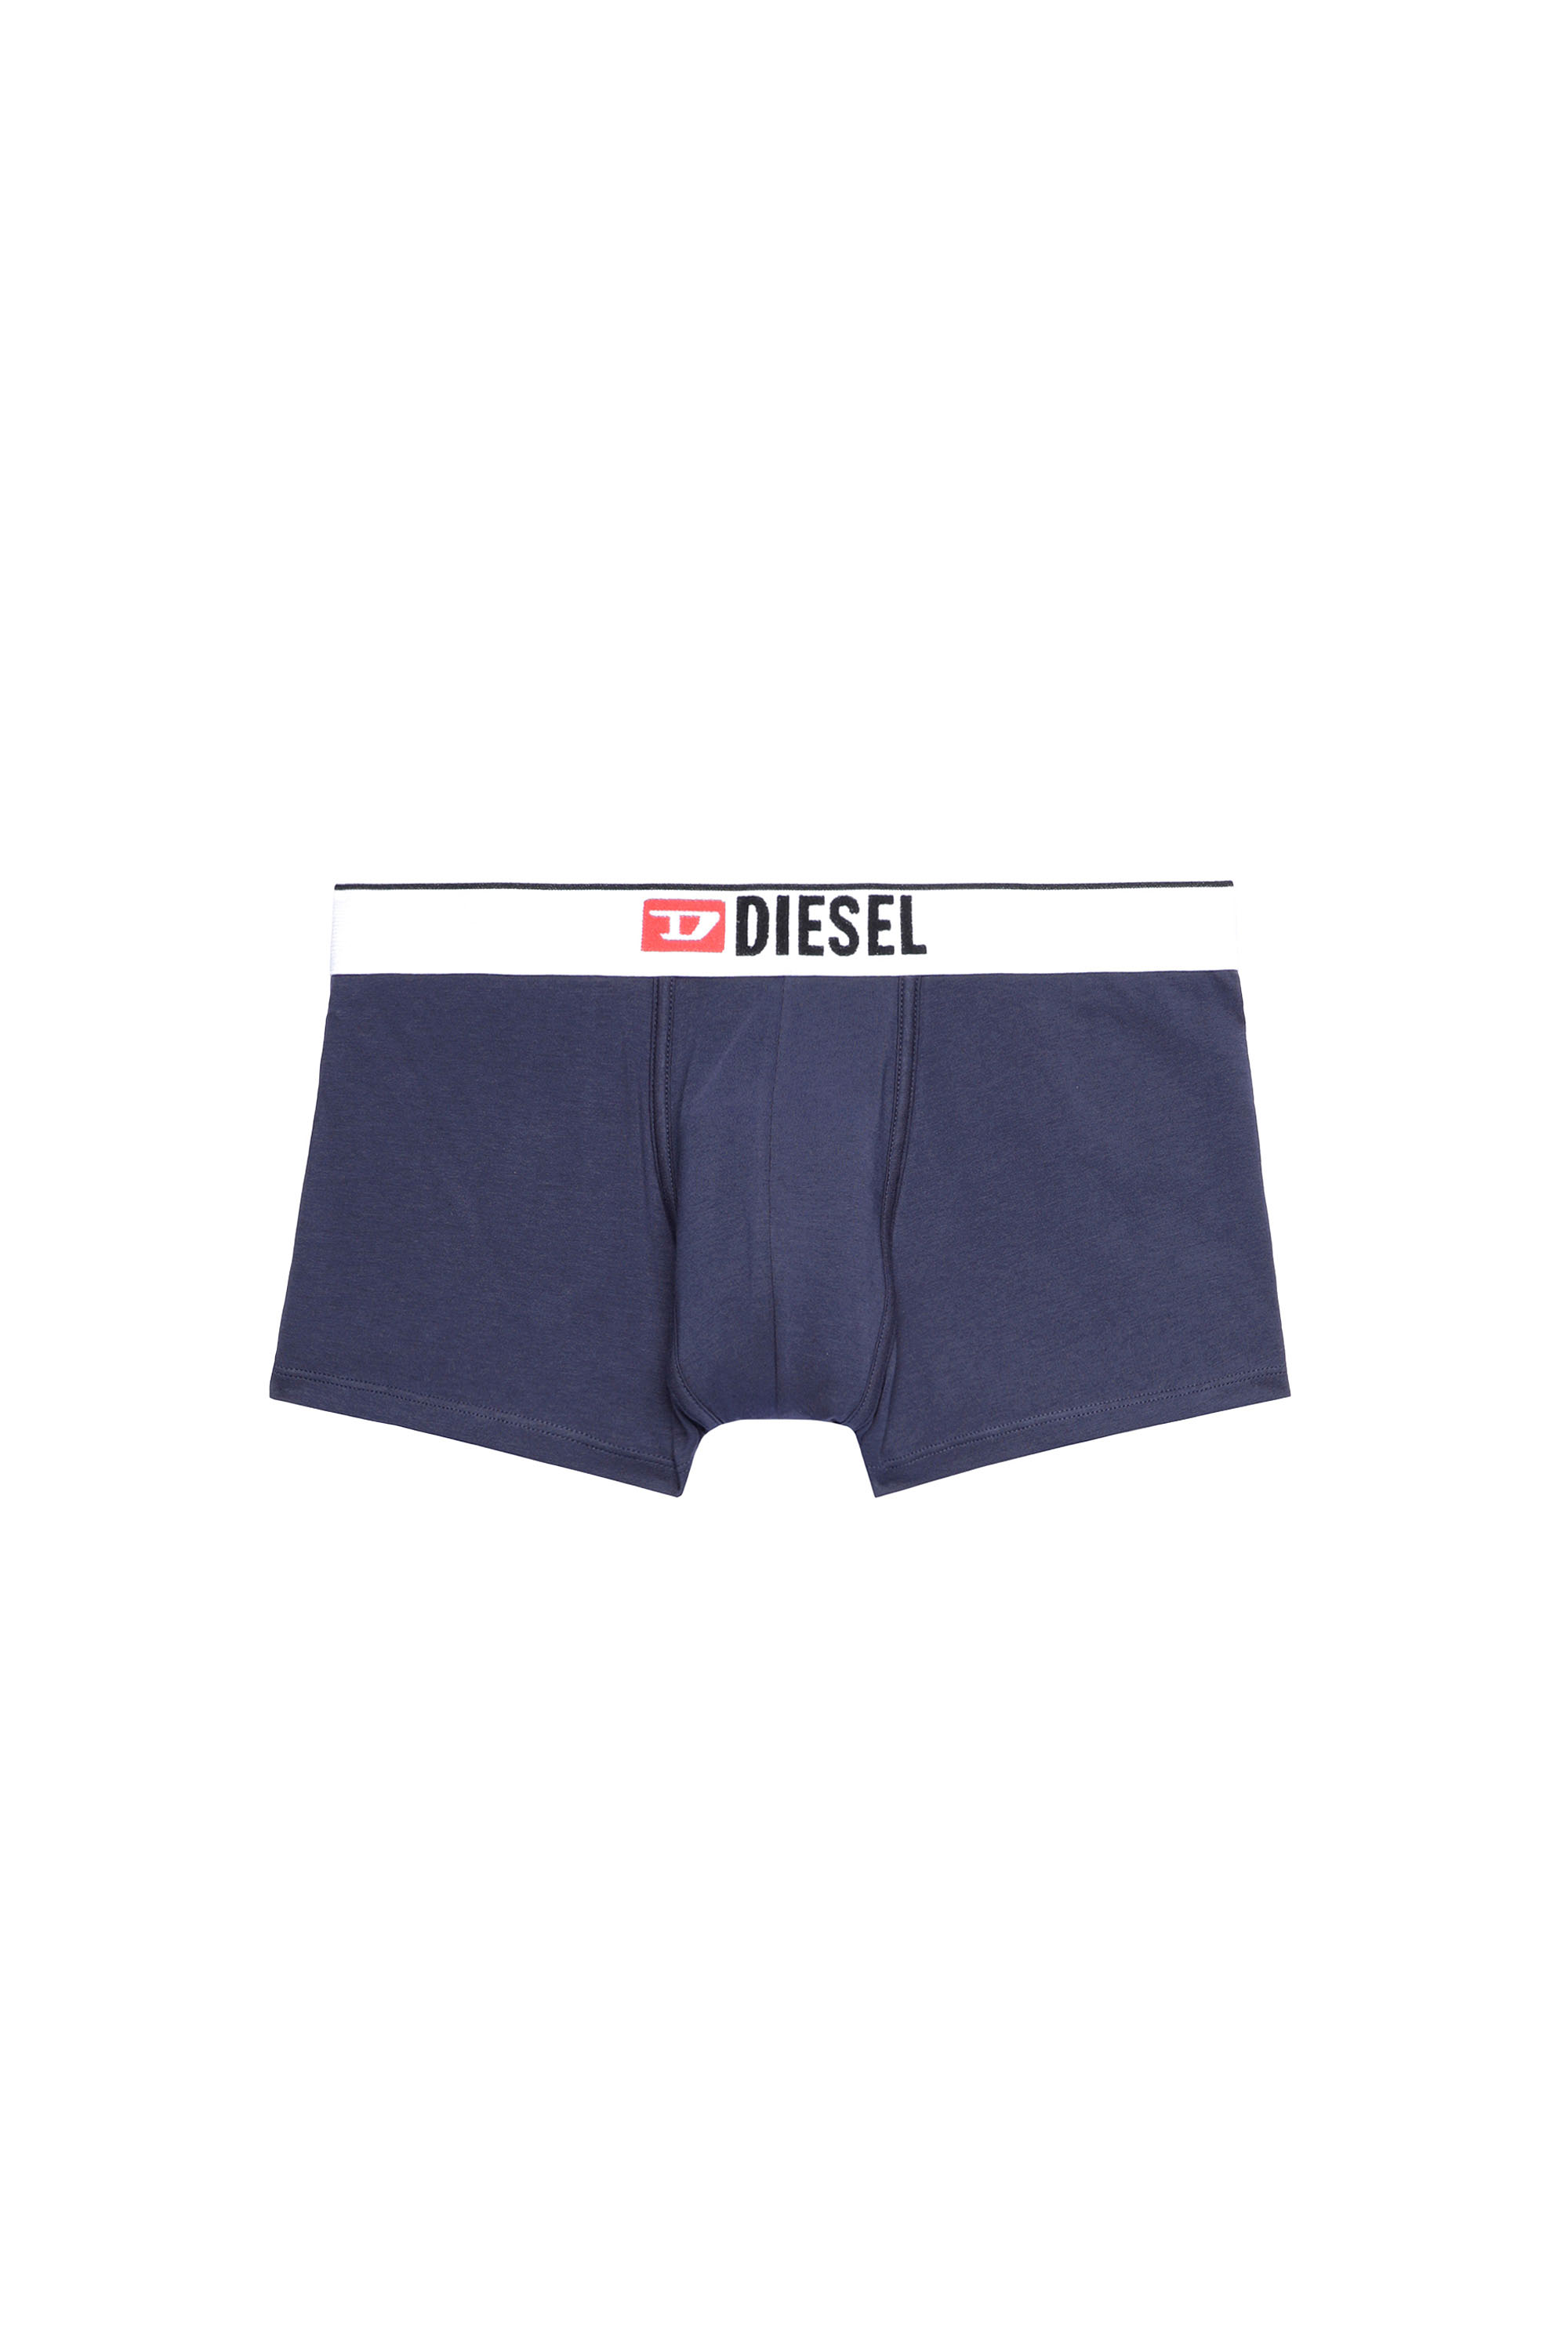 Diesel - UMBX-DAMIEN, Blu - Image 2